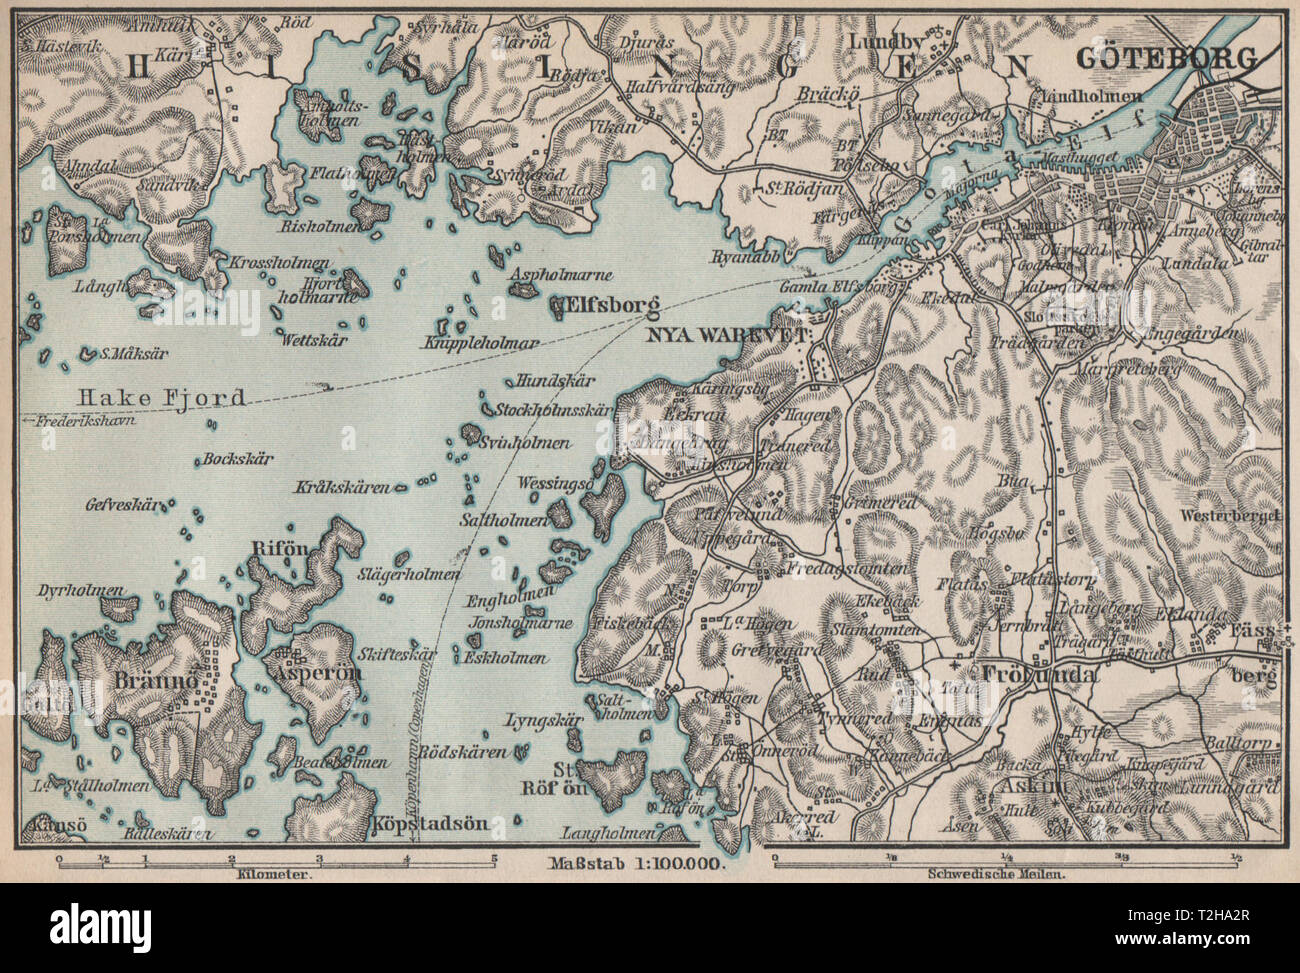 GOTA Mündung. Göta älv. Göteborg Göteborg Umgebung. Schweden karta 1899 Karte Stockfoto